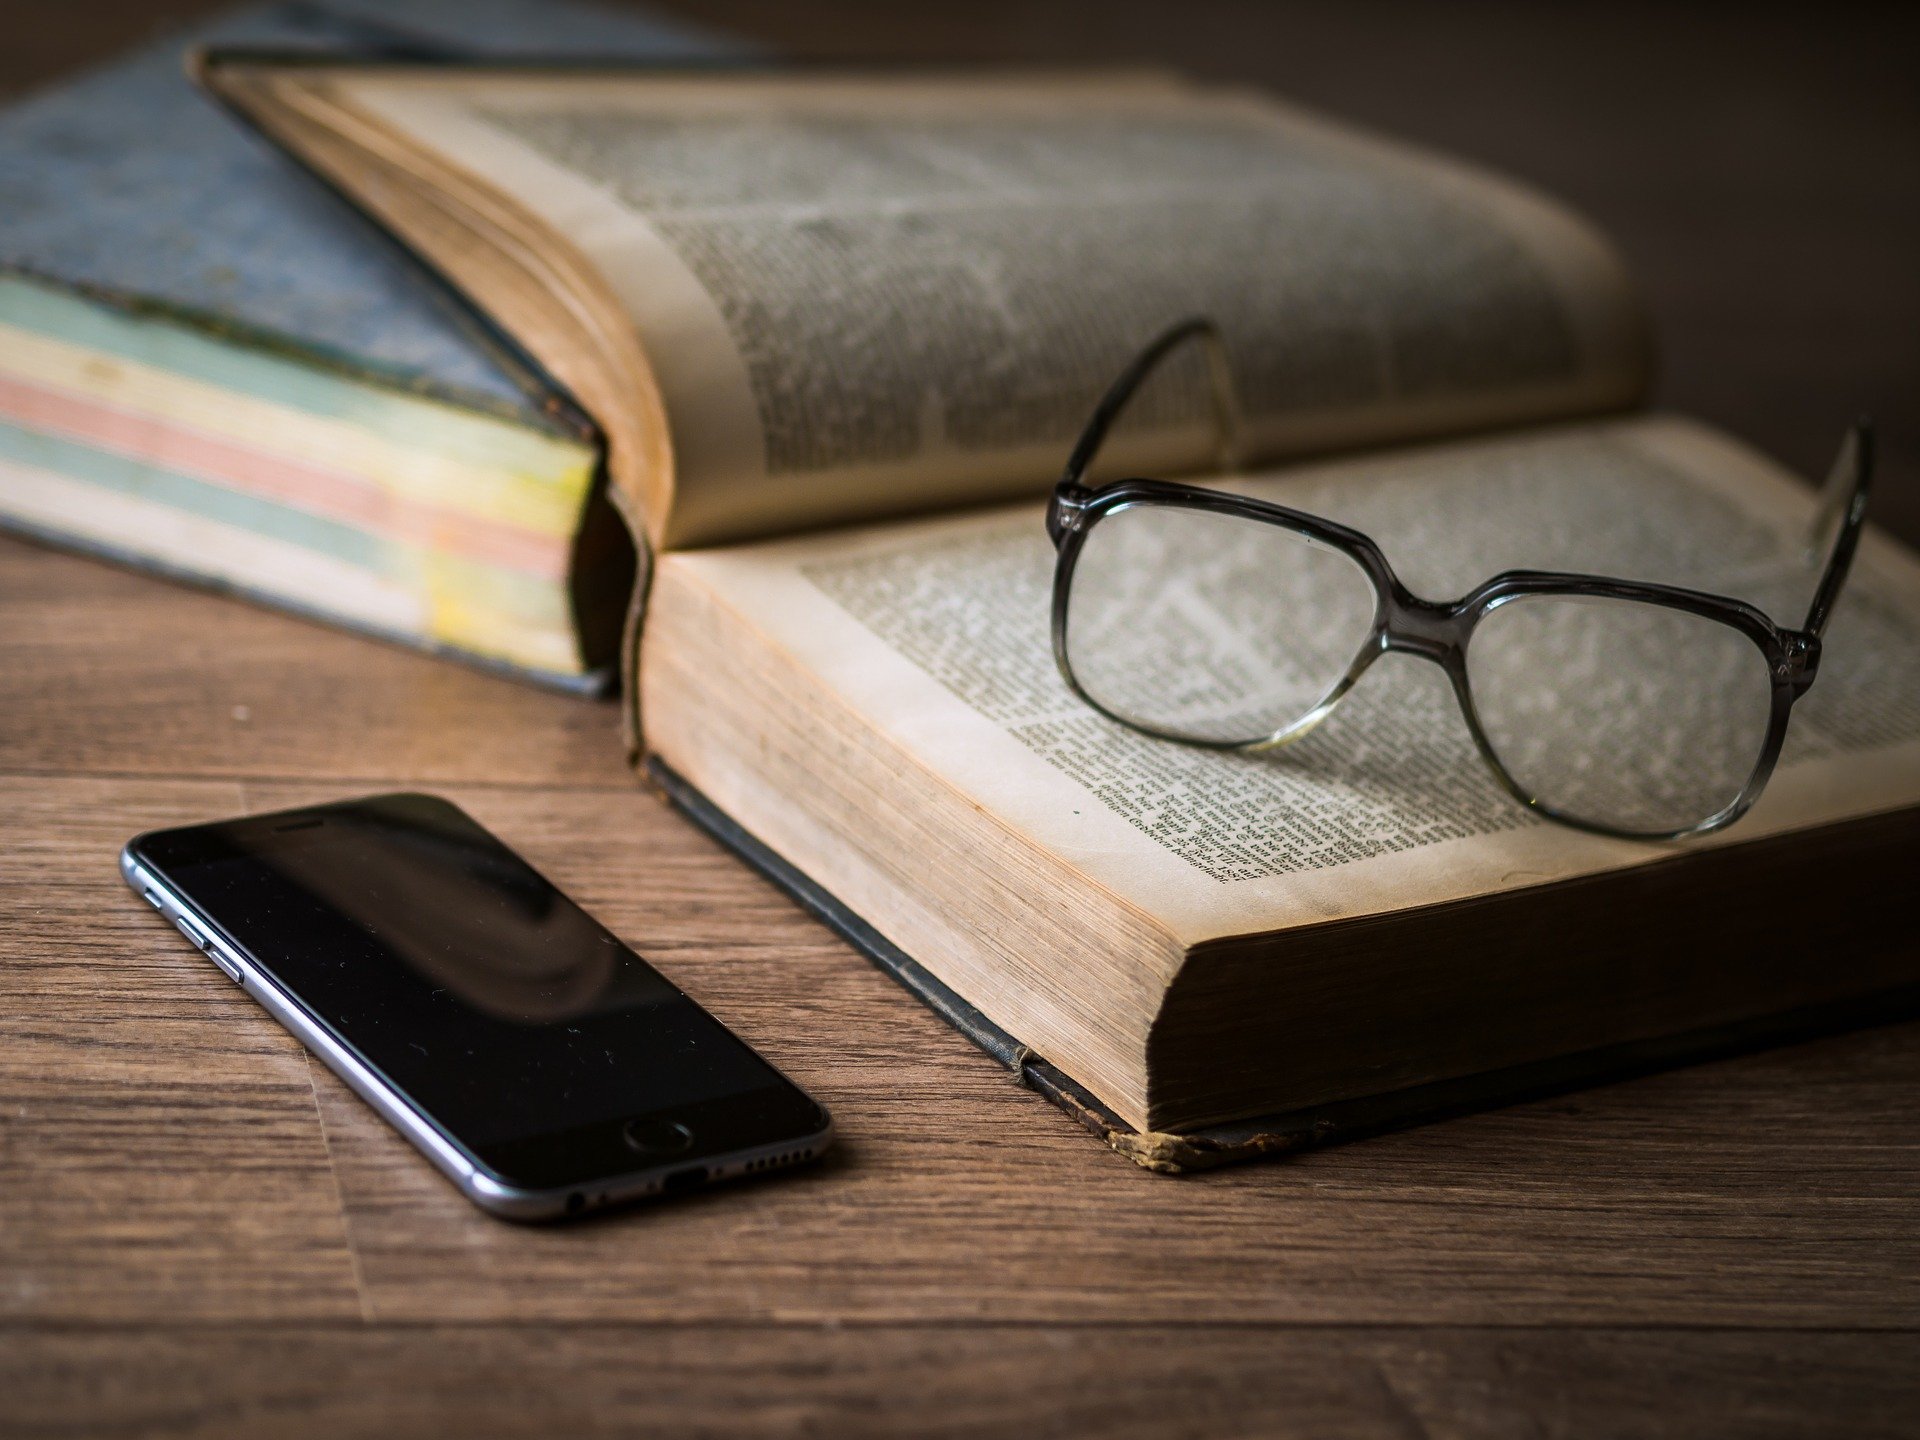 Foto von Smartphone, welches neben Buch und Brille liegt